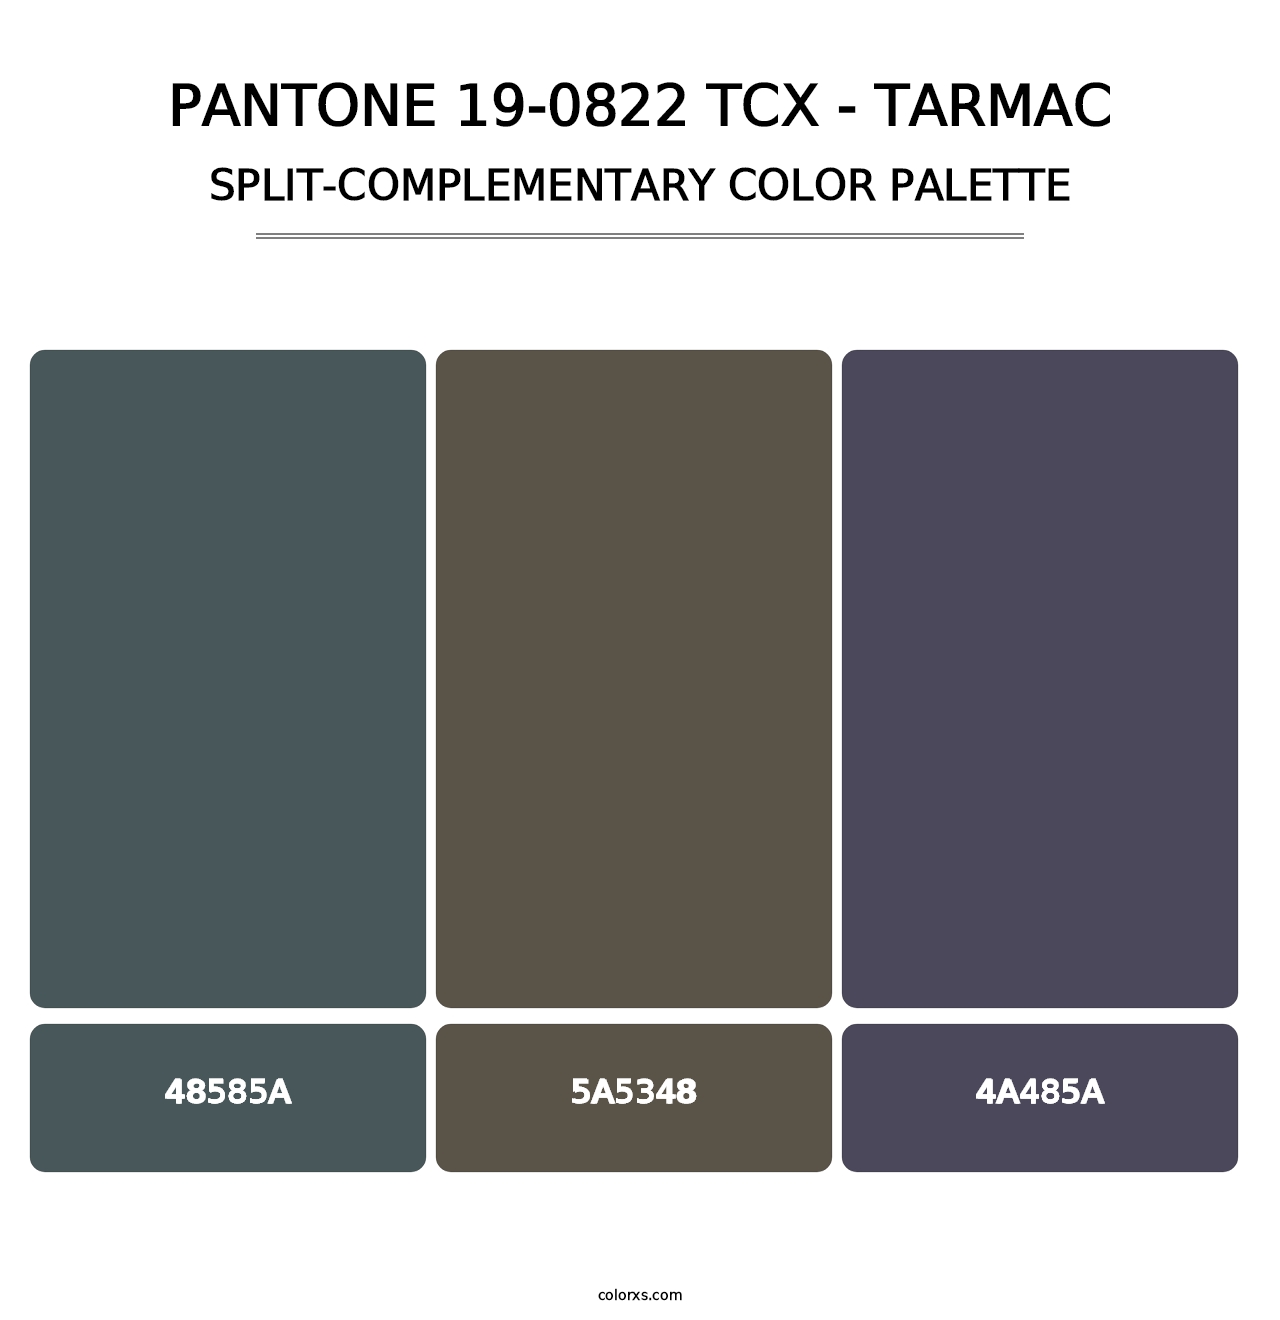 PANTONE 19-0822 TCX - Tarmac - Split-Complementary Color Palette